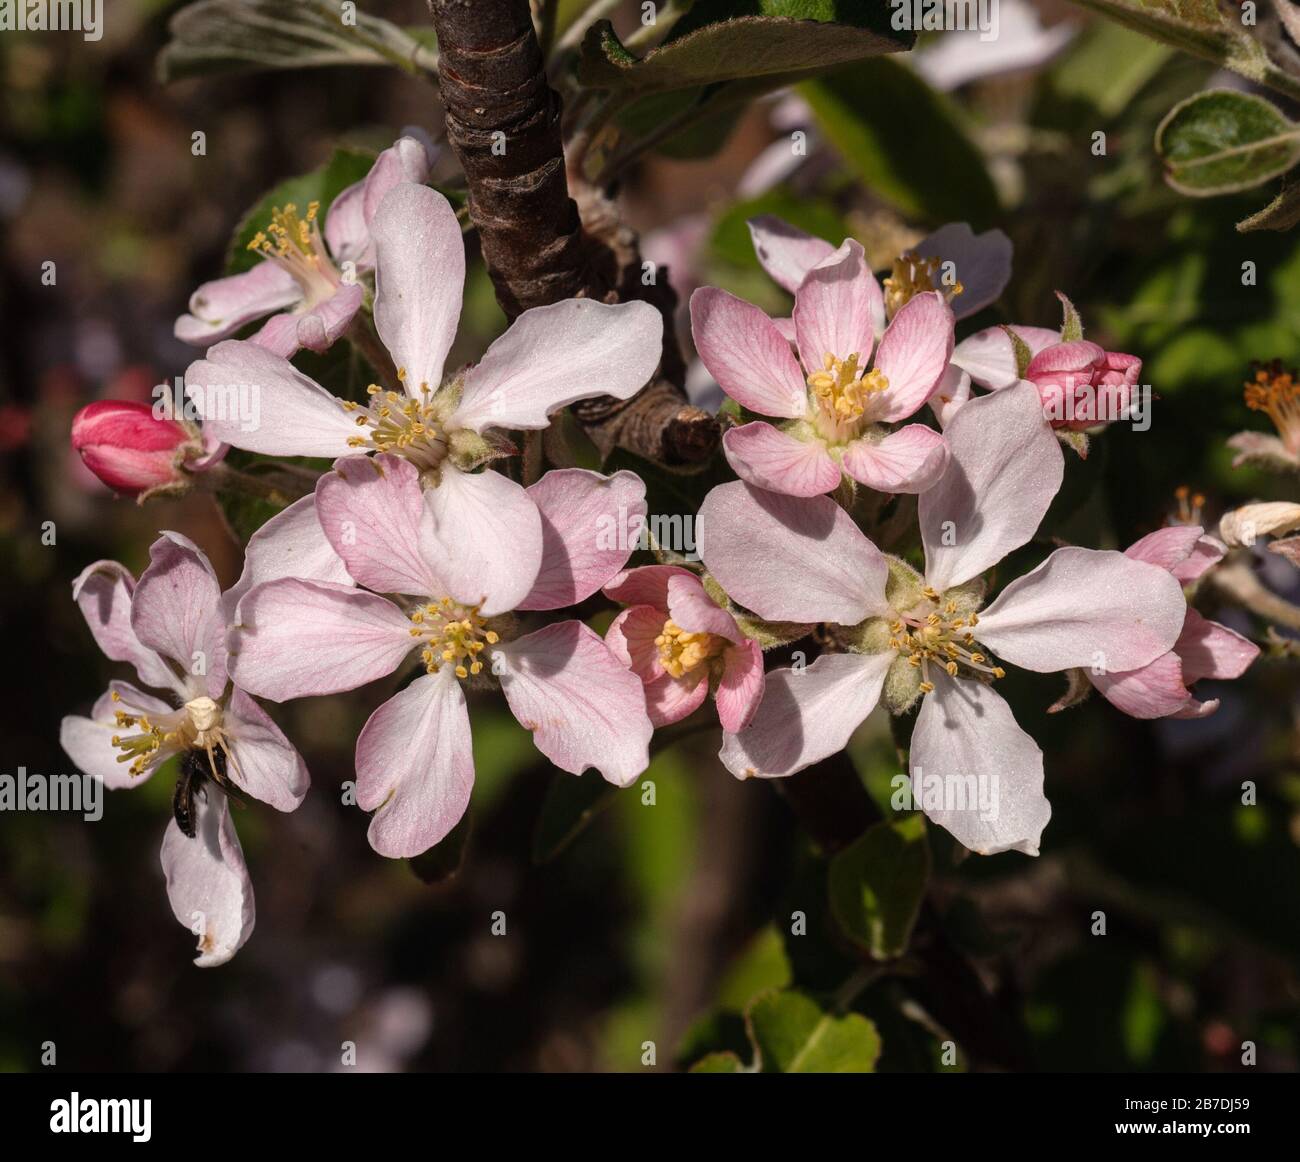 Malus domestica blossoms Stock Photo